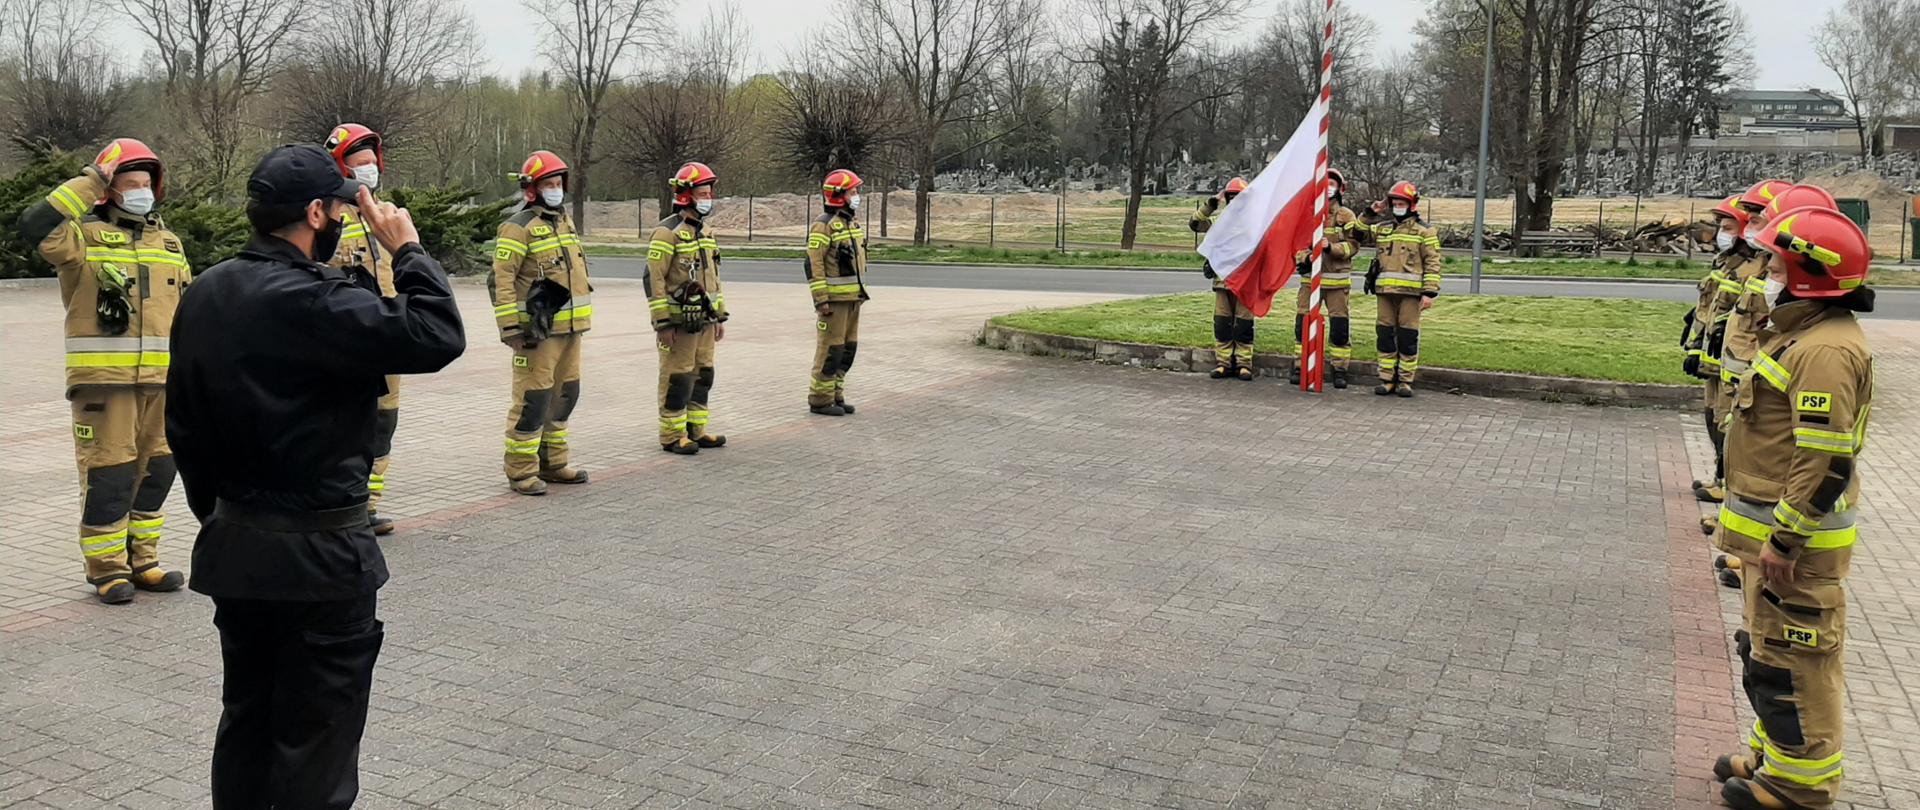 Na zdjęciu widać 14-stu strażaków. 10-ciu z nich stoi w dwóch 5-cio osobowych szeregach, zwróconych twarzami do siebie. Między nimi znajduje się strażak (dowódca) zwrócony twarzą do masztu z flagą znajdującym się na przeciw niego. Flagę polski na maszt wciąga 3 strażaków.